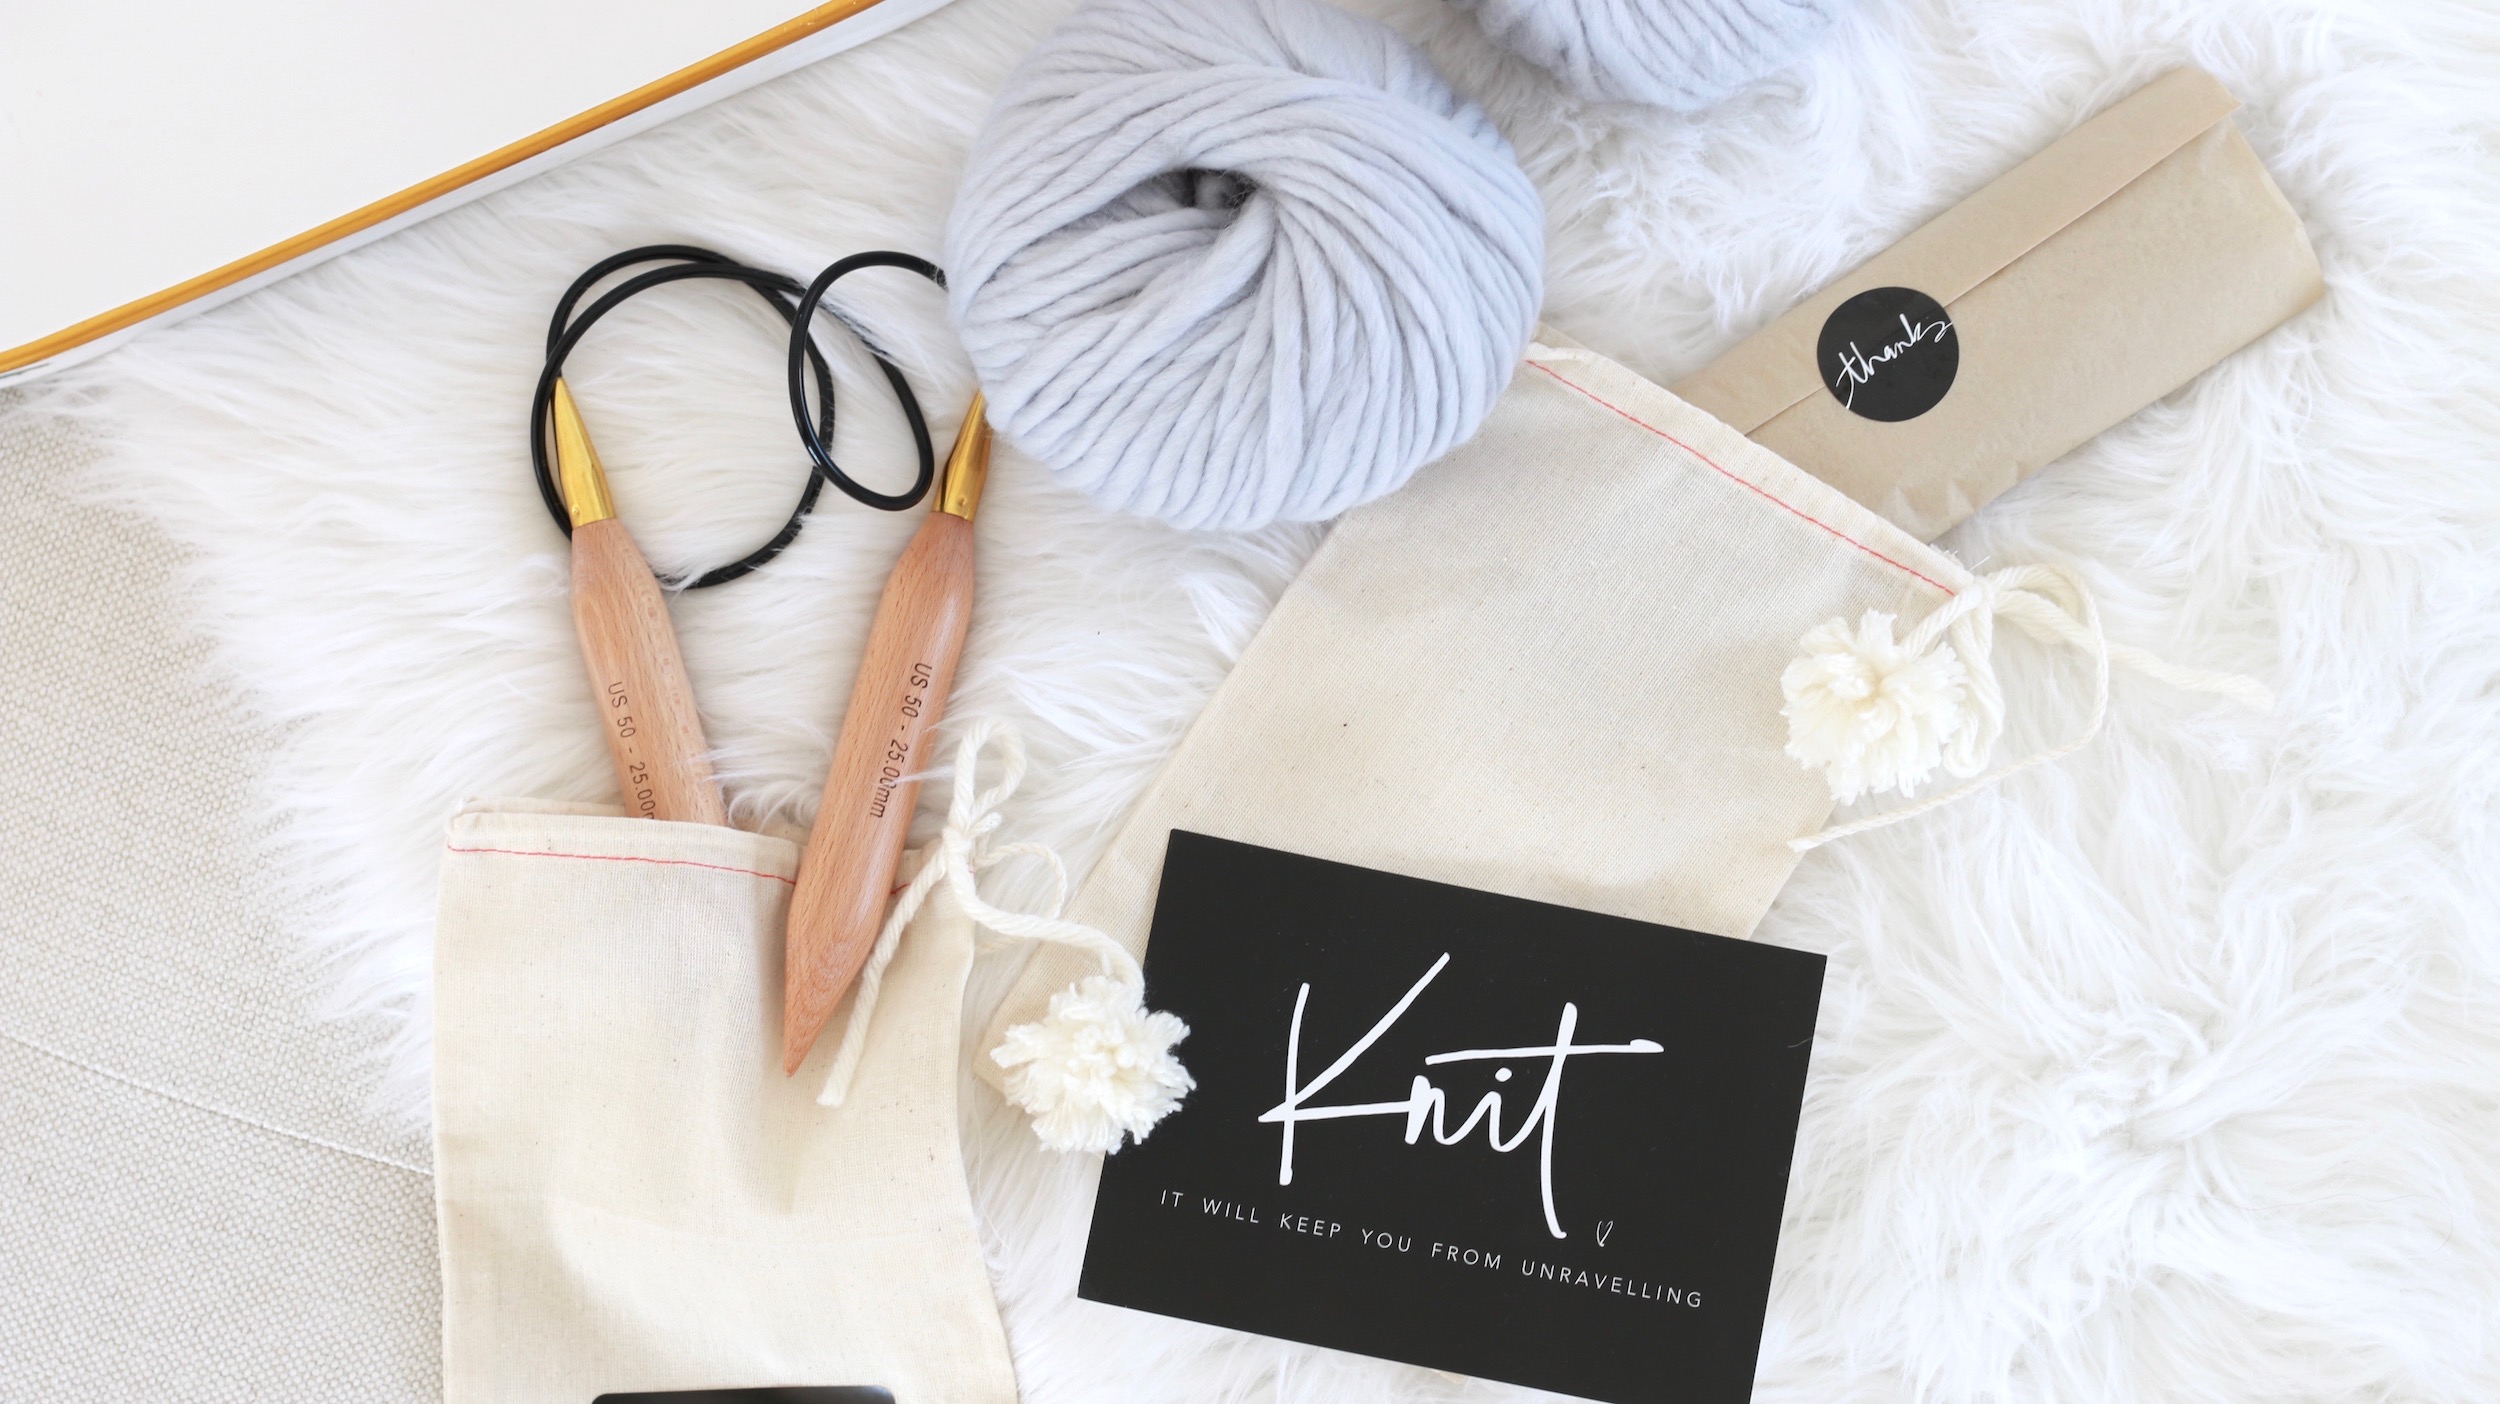 FREE chunky knit blanket pattern. Knit a blanket in a weekend! Easy beginner pattern!